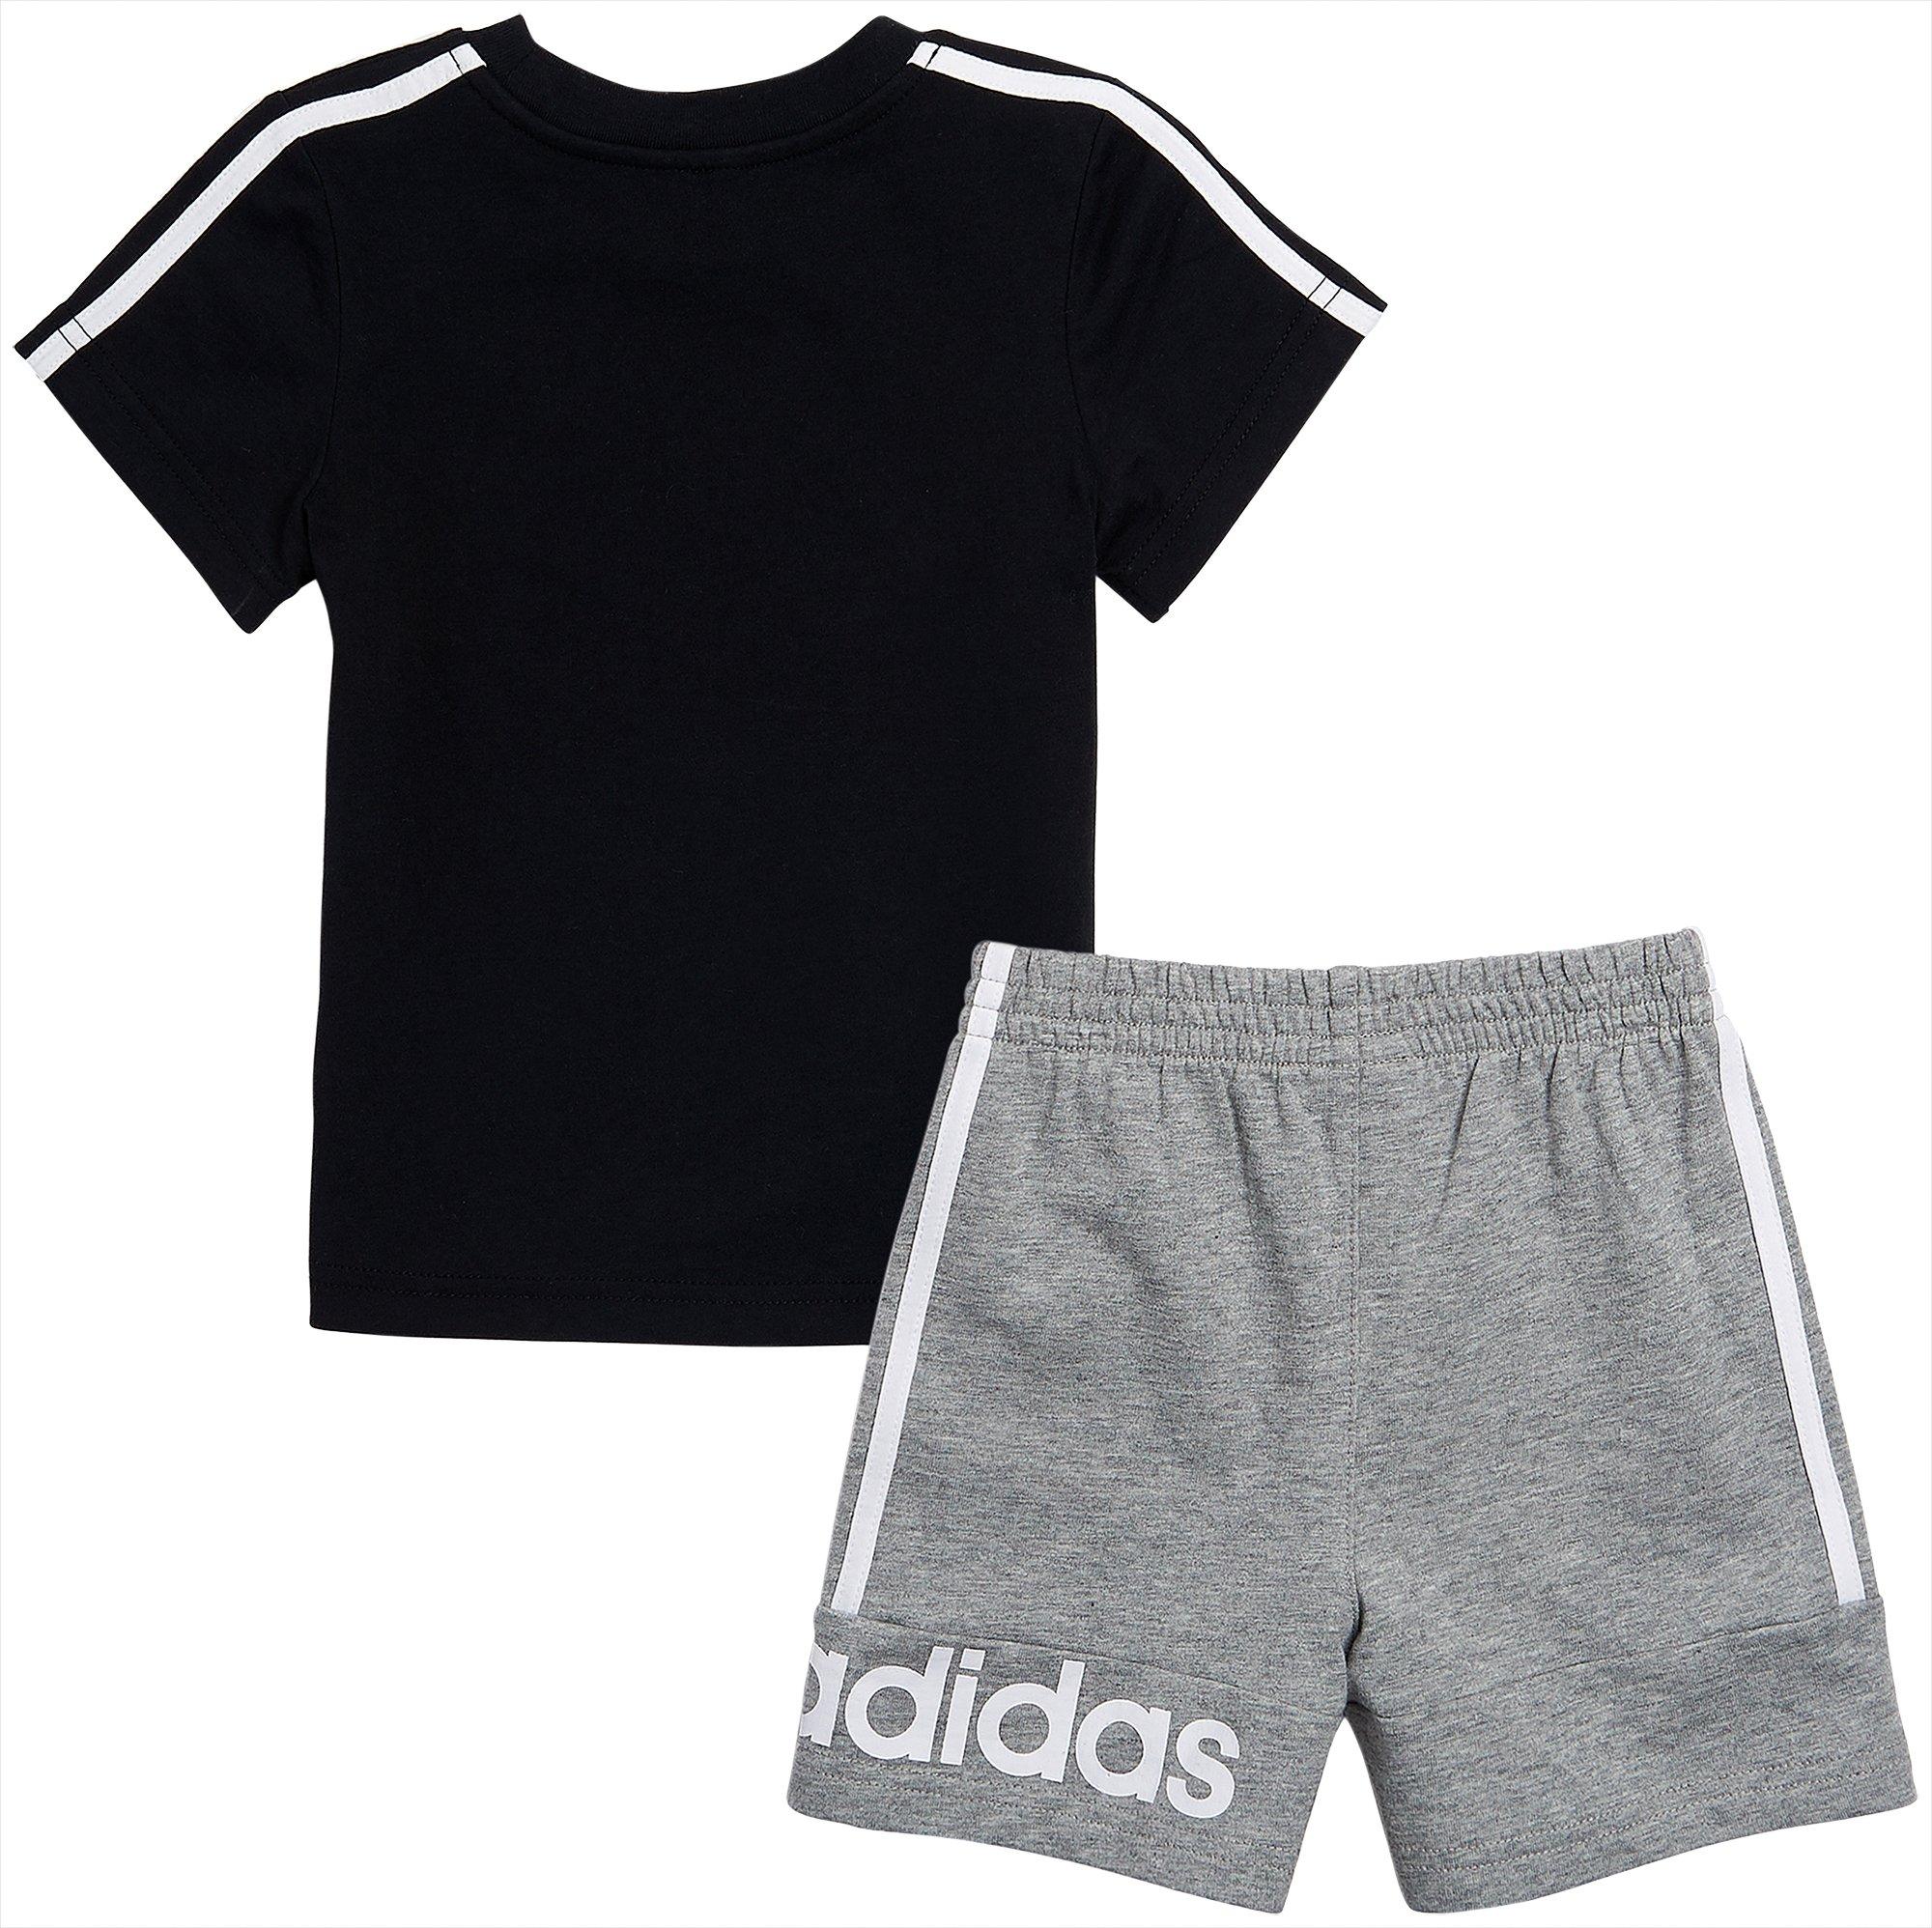 boys adidas shorts and shirt